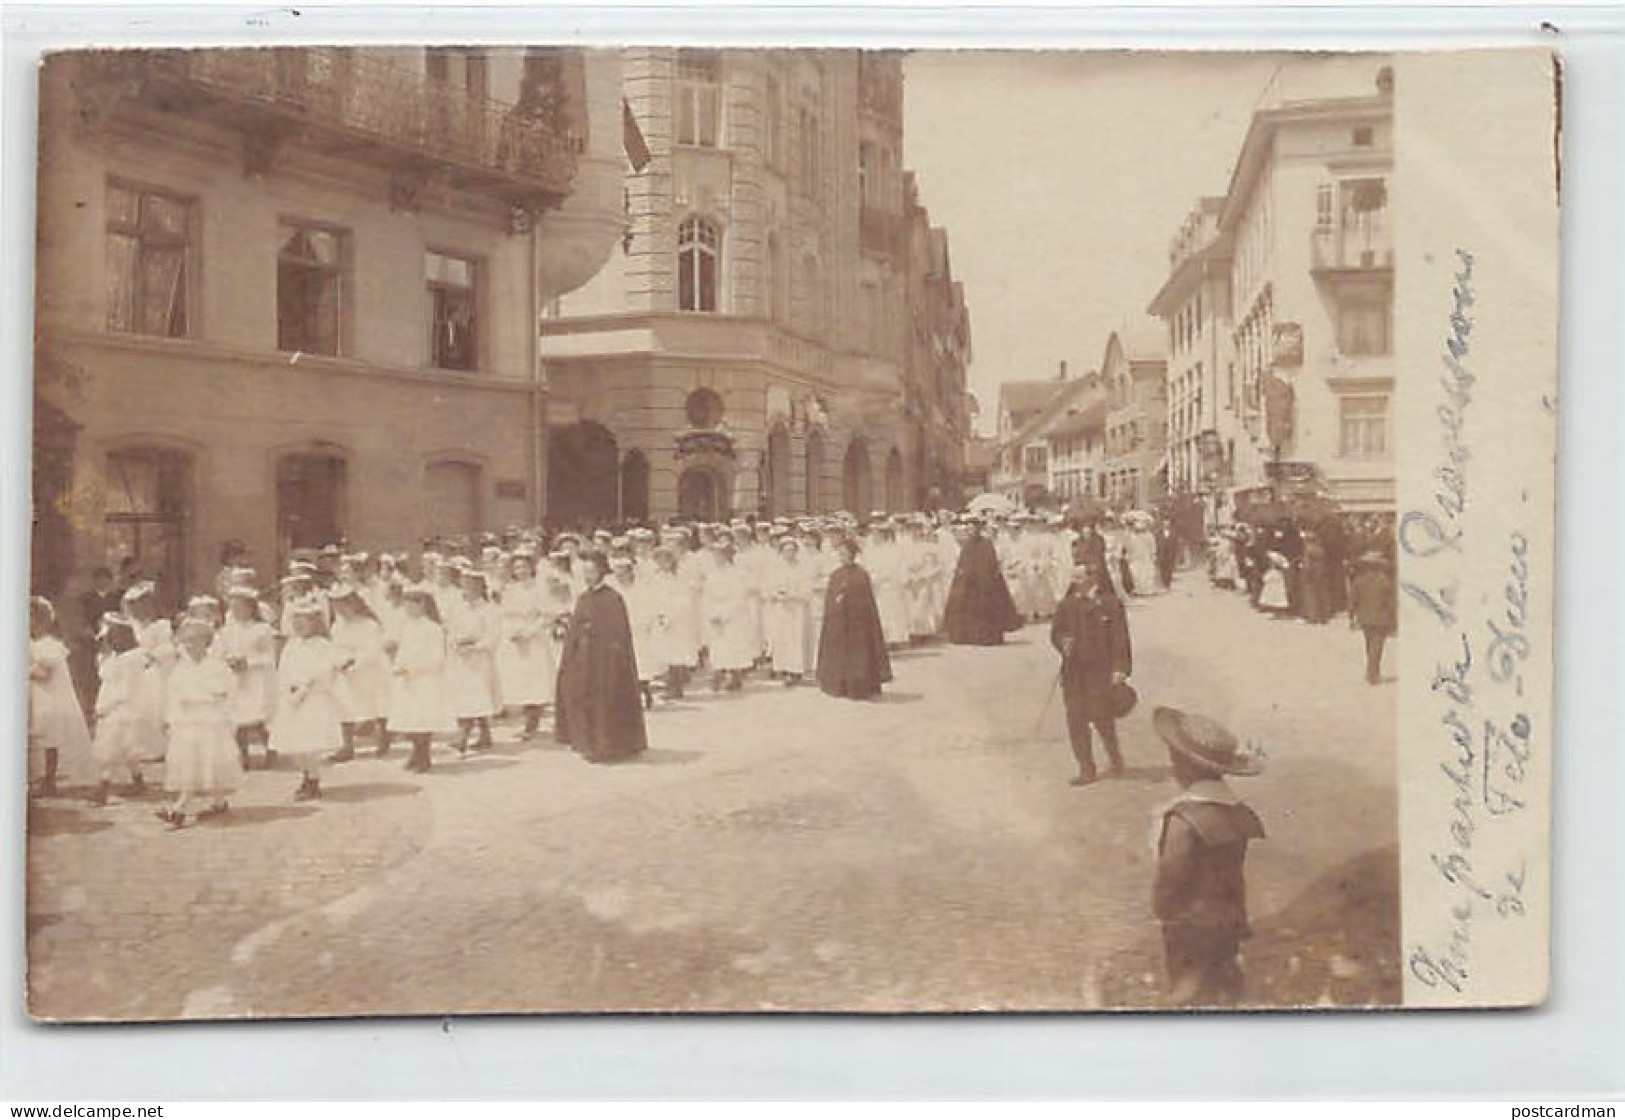 Schweiz - Rorschach (SG) Fotokarte - Procession De Fête-Dieu - Jahre 1906 - Verlag Inconnu  - Rorschach